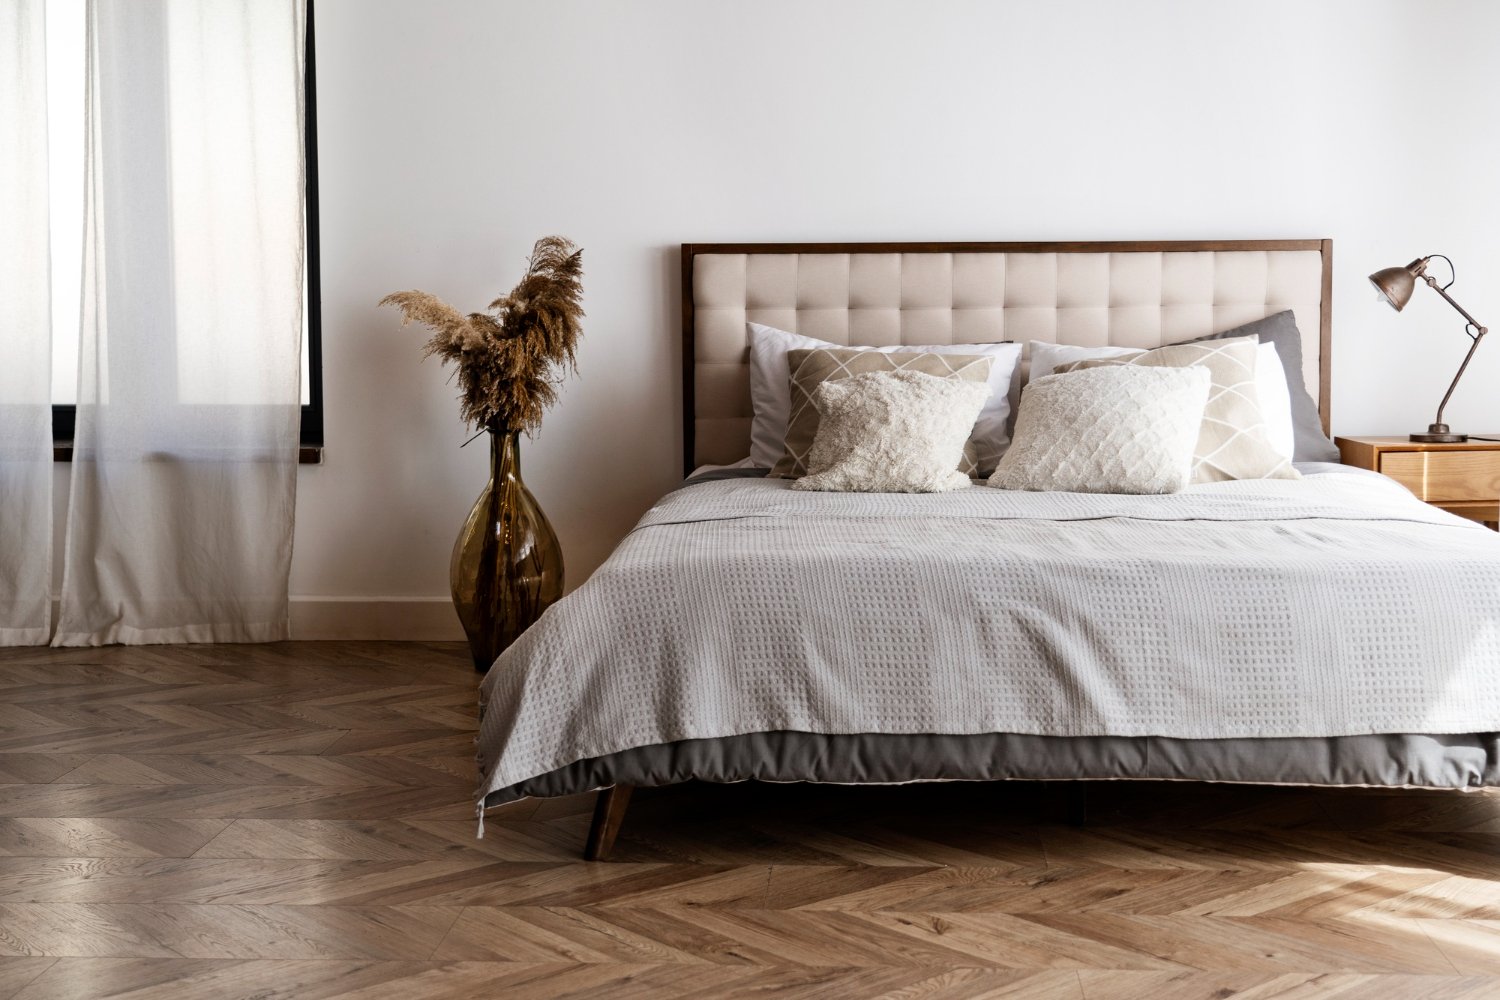 10 Minimalist Bedroom Design Ideas